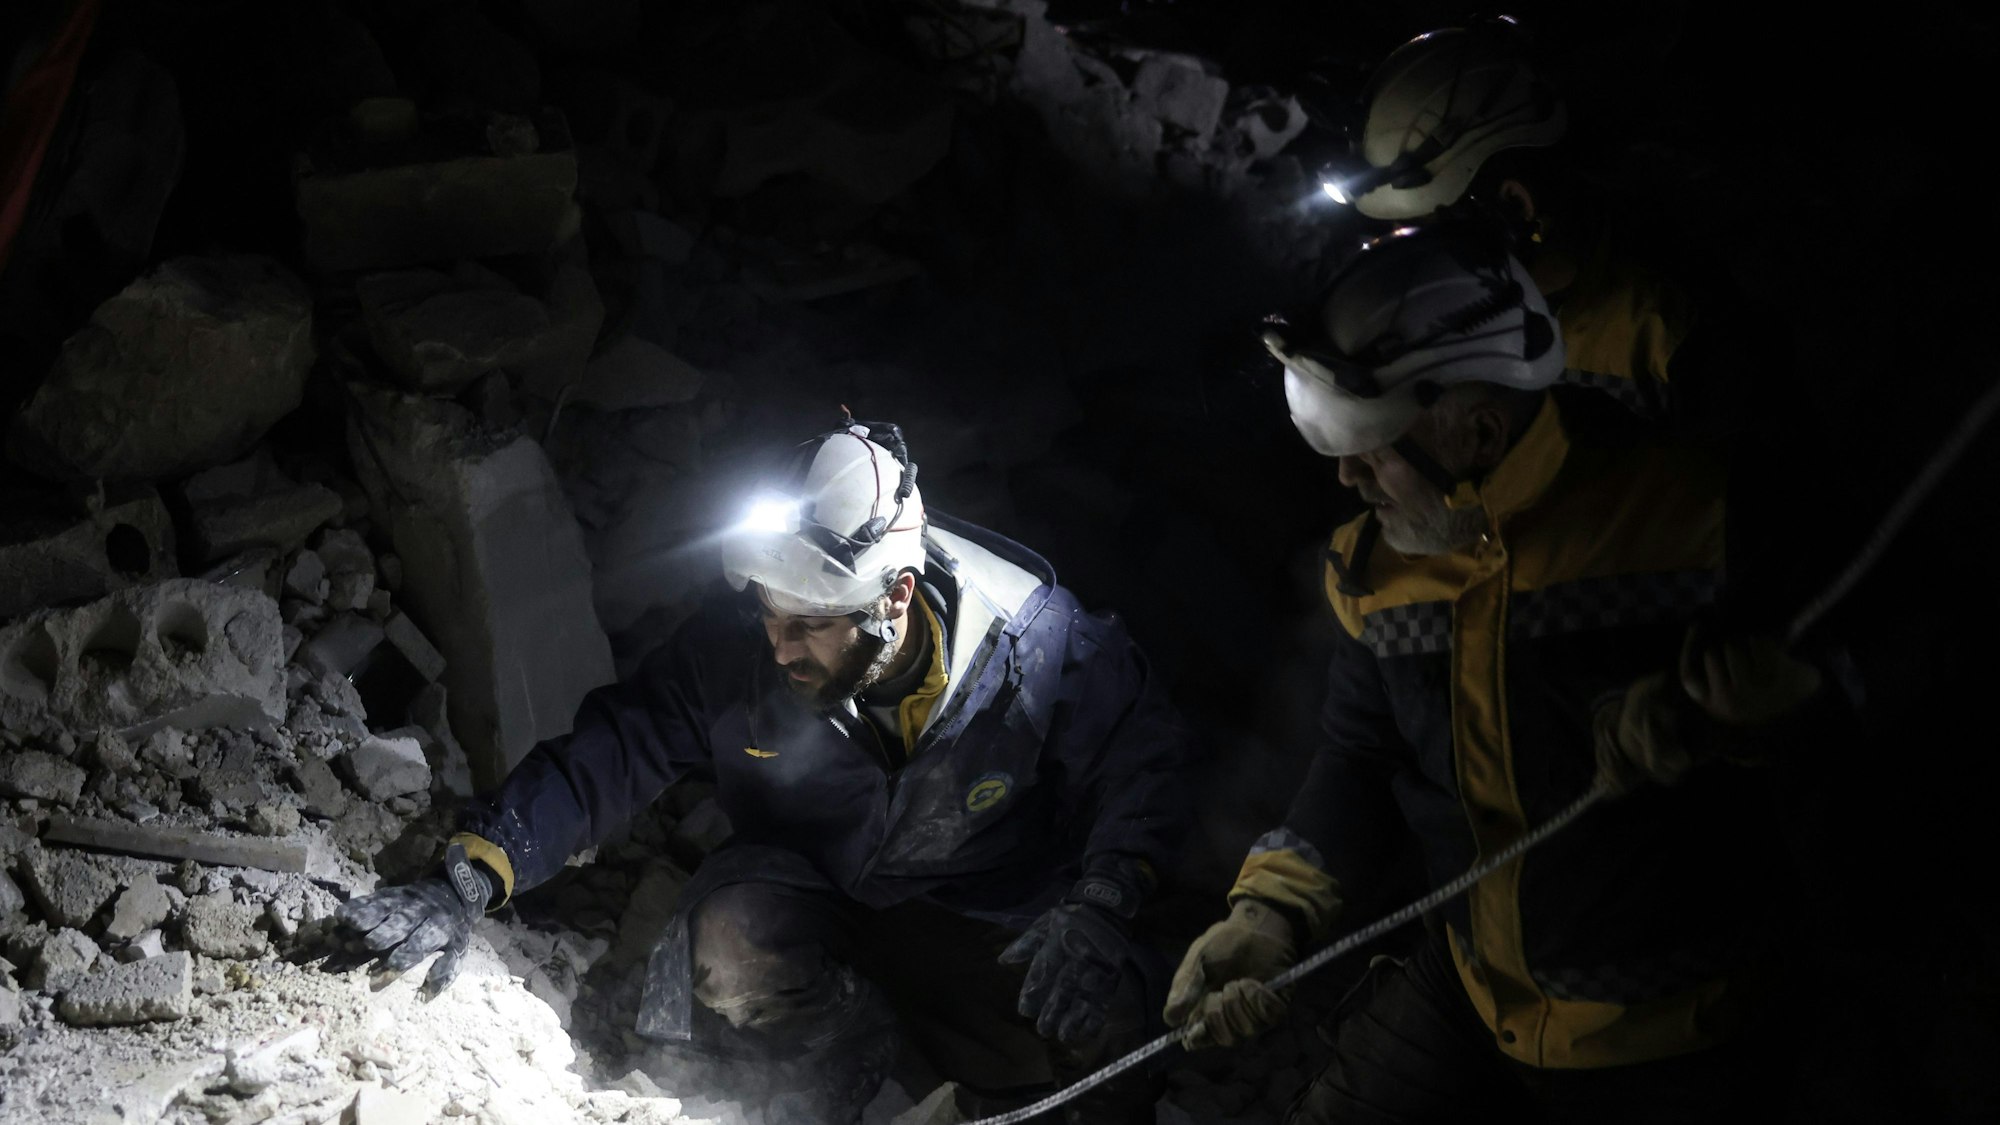 Mitglieder der Weißhelme arbeiten an der Rettung von Menschen, die nach dem verheerenden Erdbeben an der türkisch-syrischen Grenze, unter einem zerstörten Gebäude eingeschlossen sind. Einer Frau haben die Helfer nun das Leben gerettet.